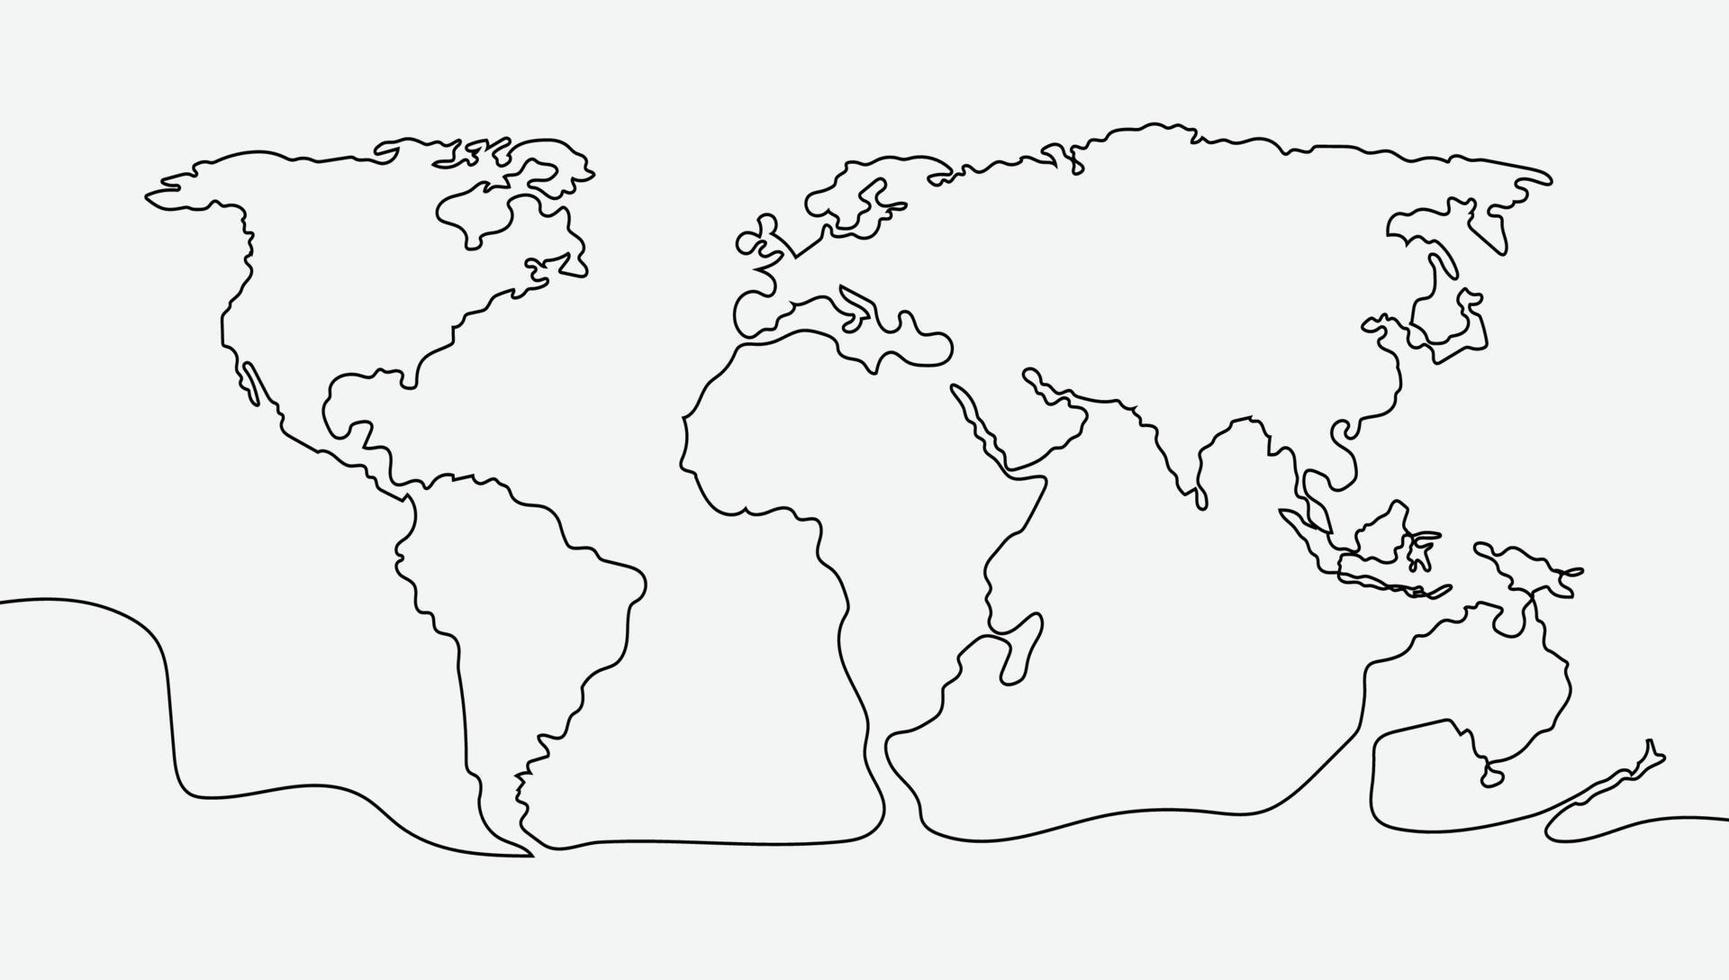 uno carrera contorno mundo mapa vector